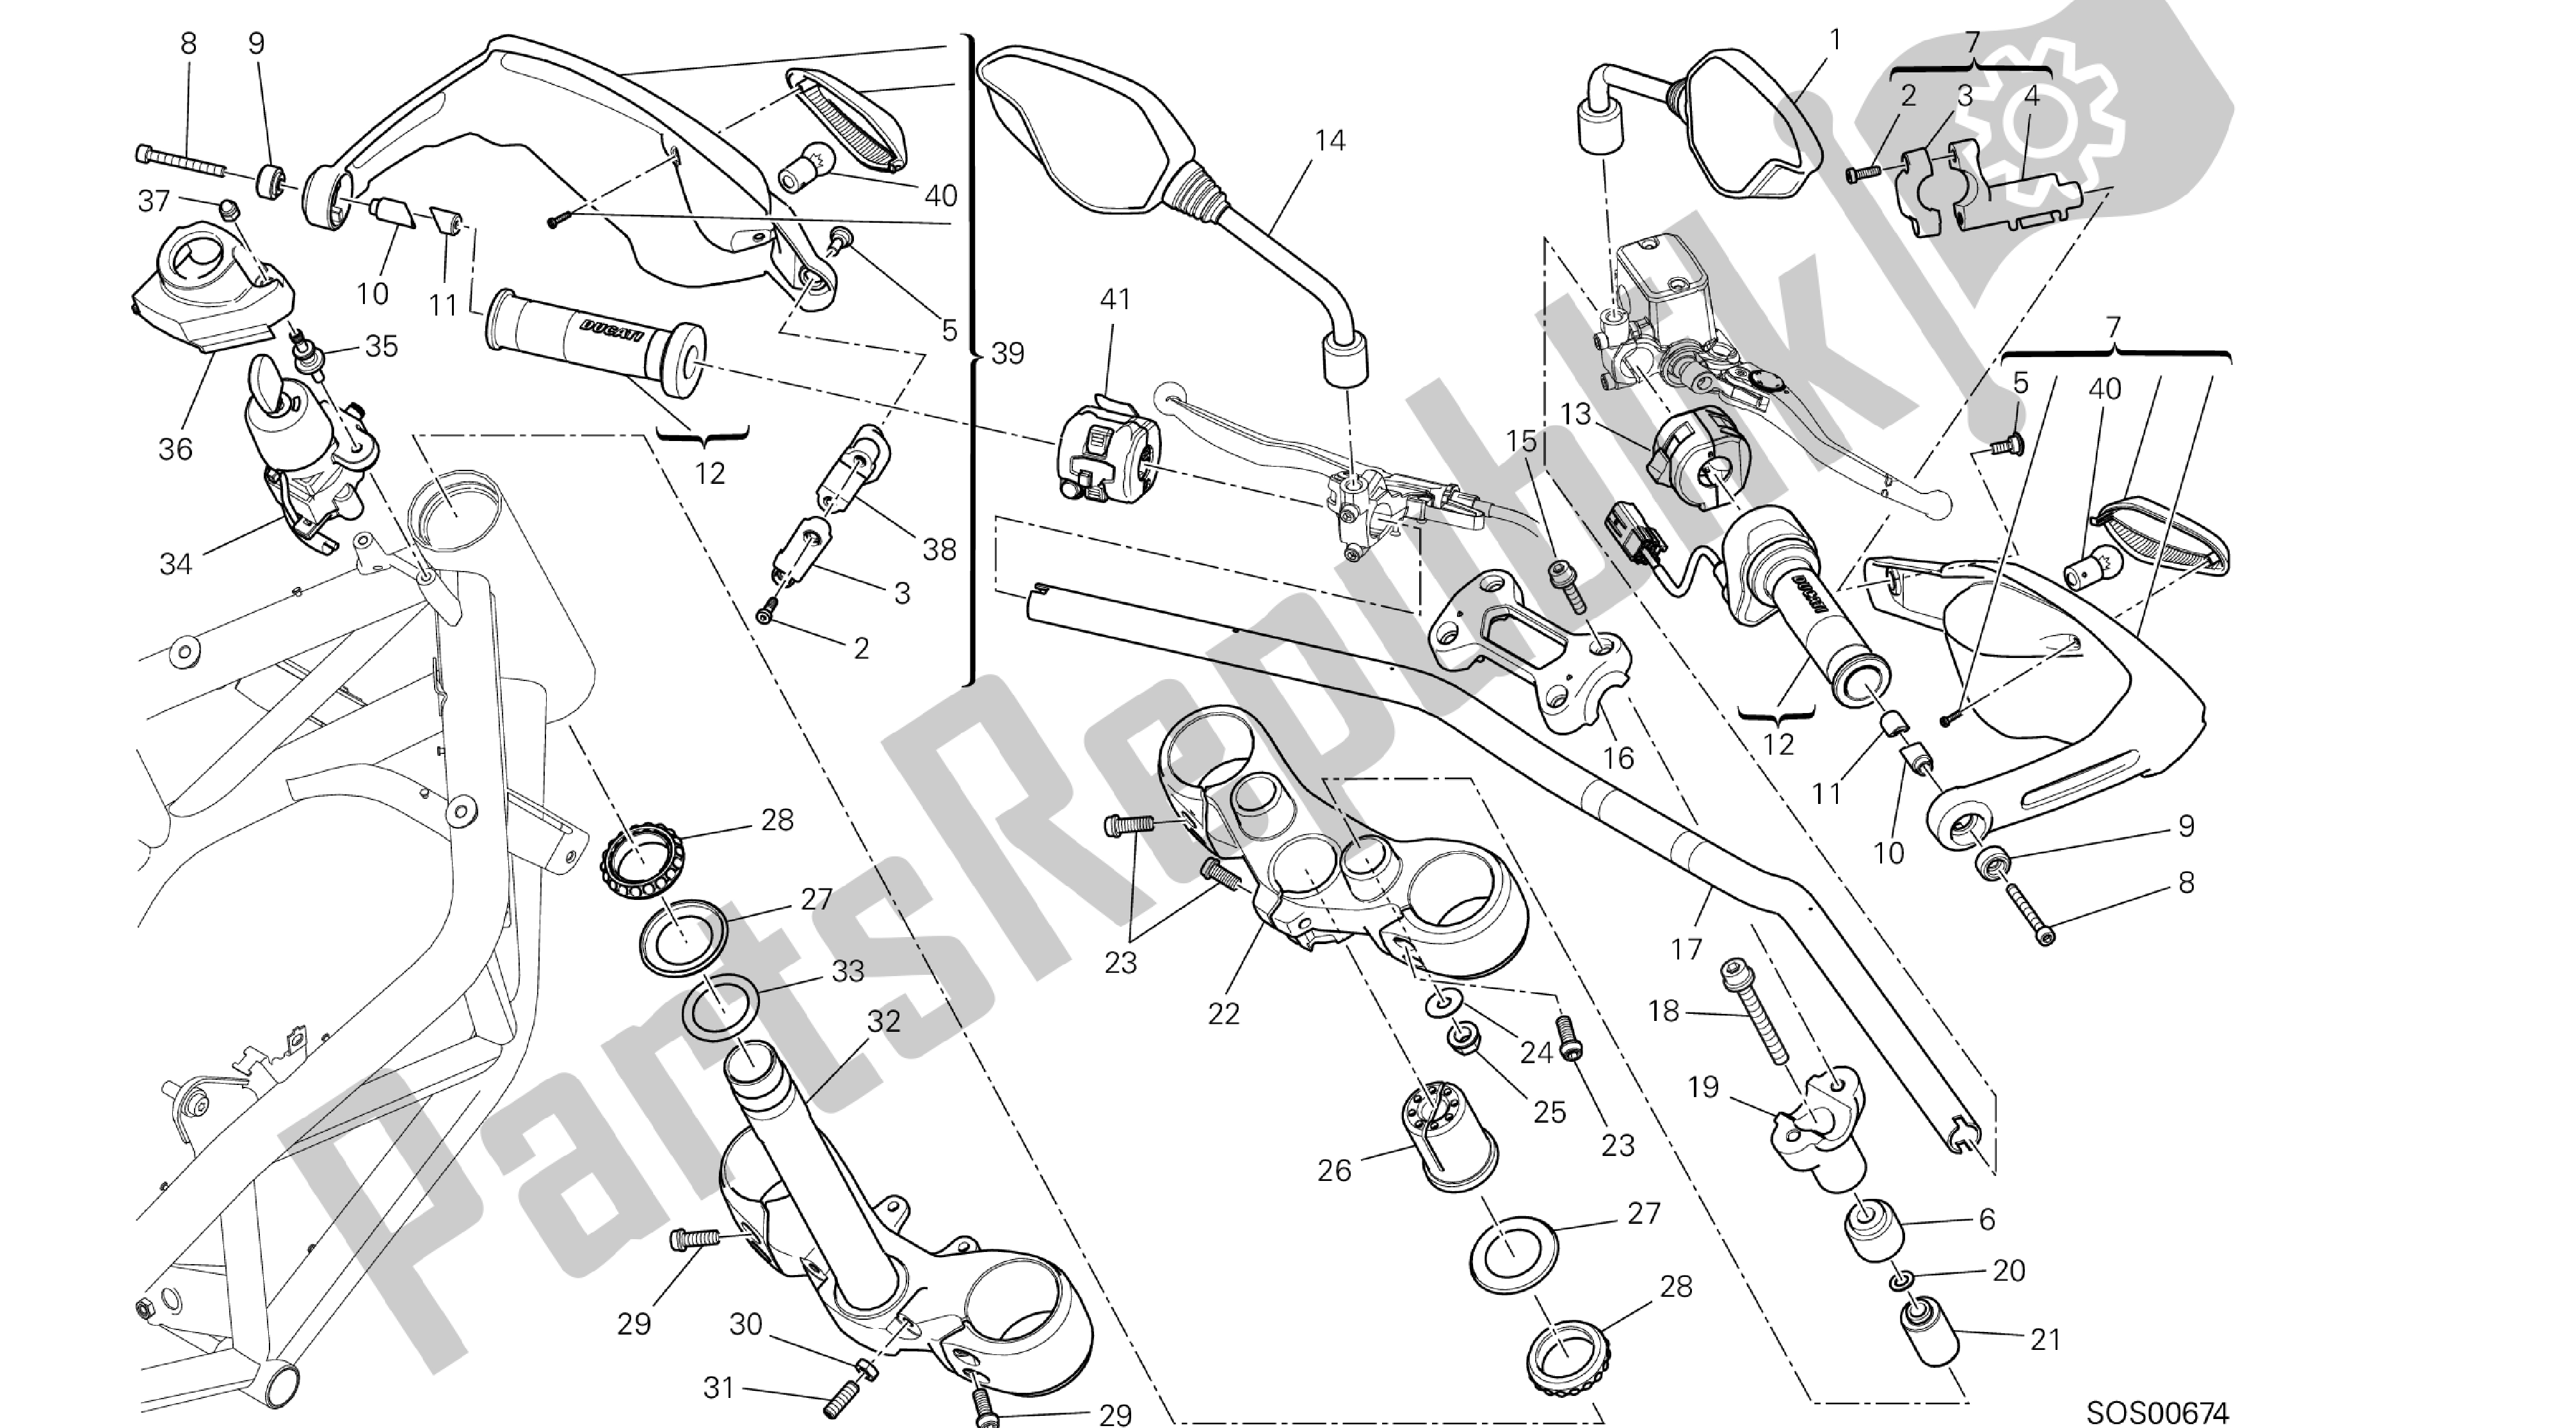 Tutte le parti per il Disegno 021 - Manubrio E Comandi [x St: Cal, C Dn, Eur] Group Fr Ame del Ducati Hypermotard SP 821 2013